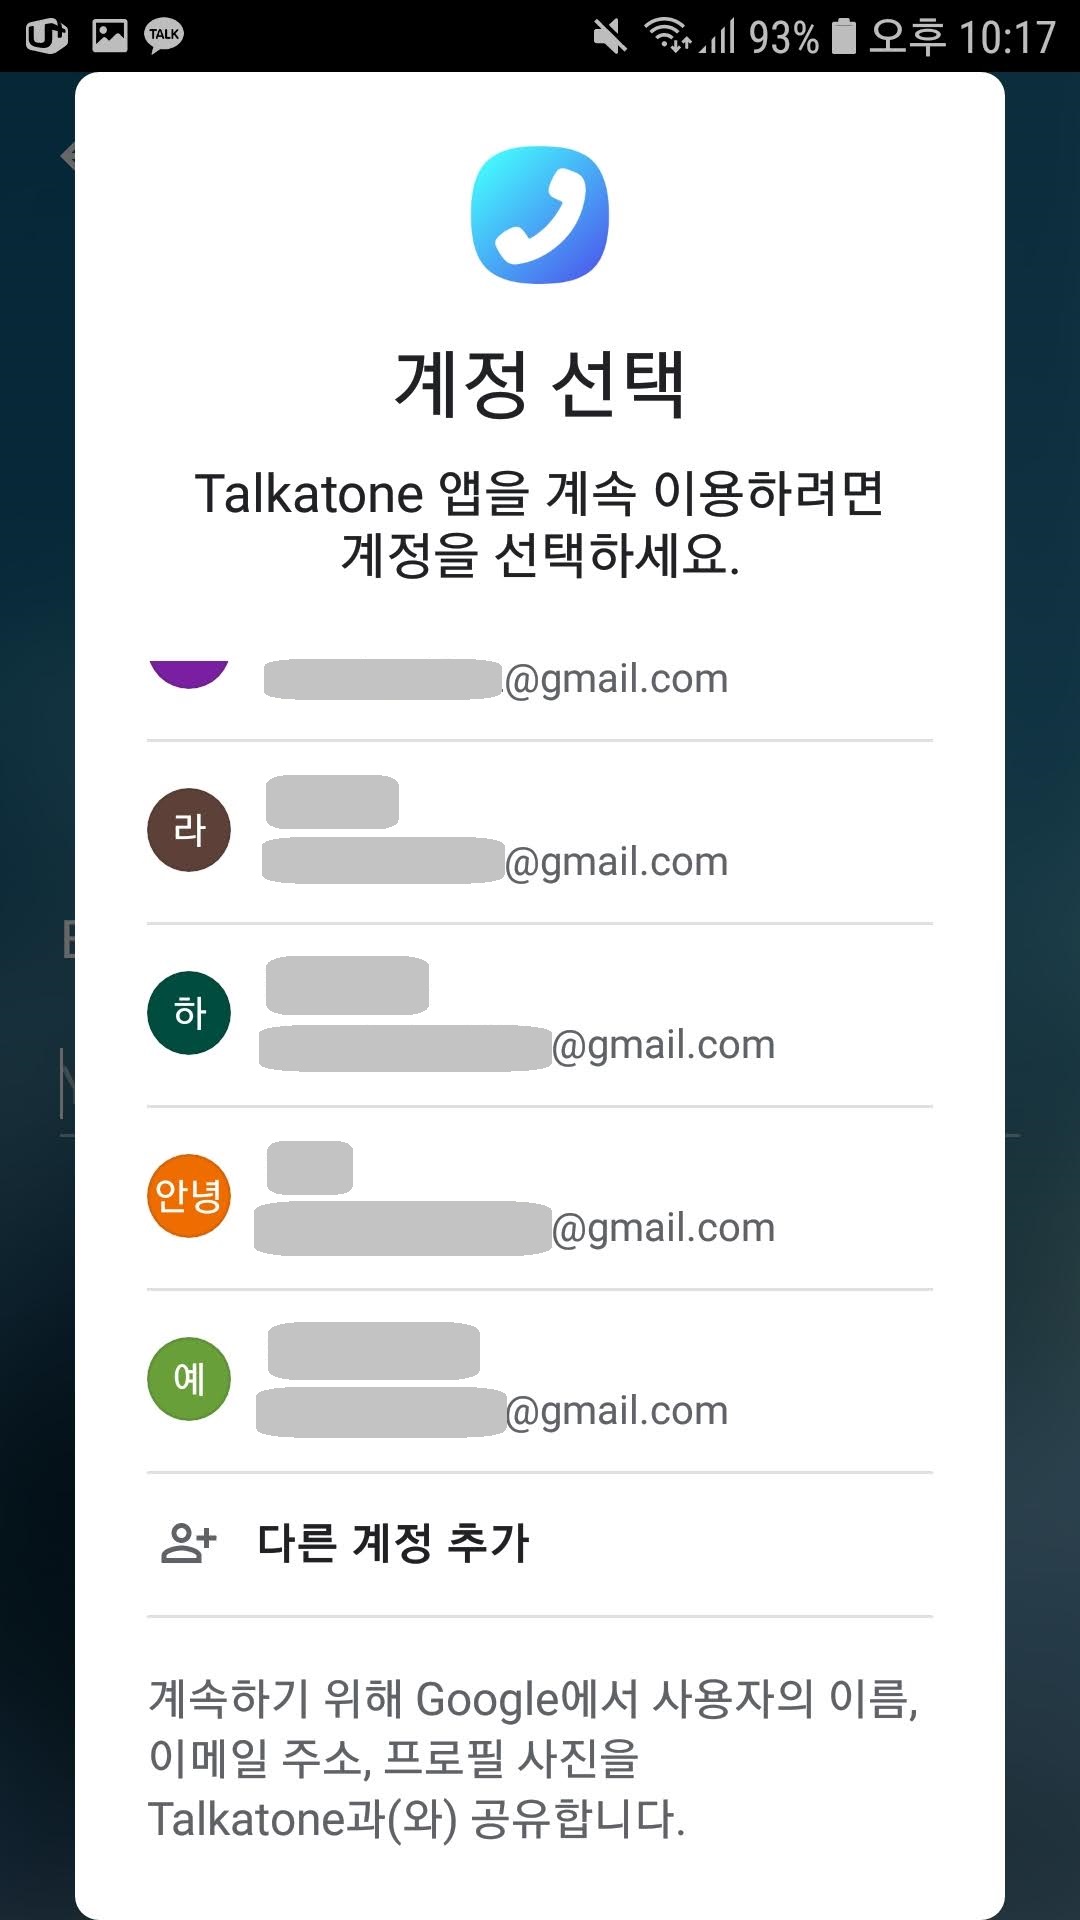 Talkatone 앱 사용법, 미국가상번호 앱 (카카오톡, 라인등 부계정을 만들때 유용) 2022